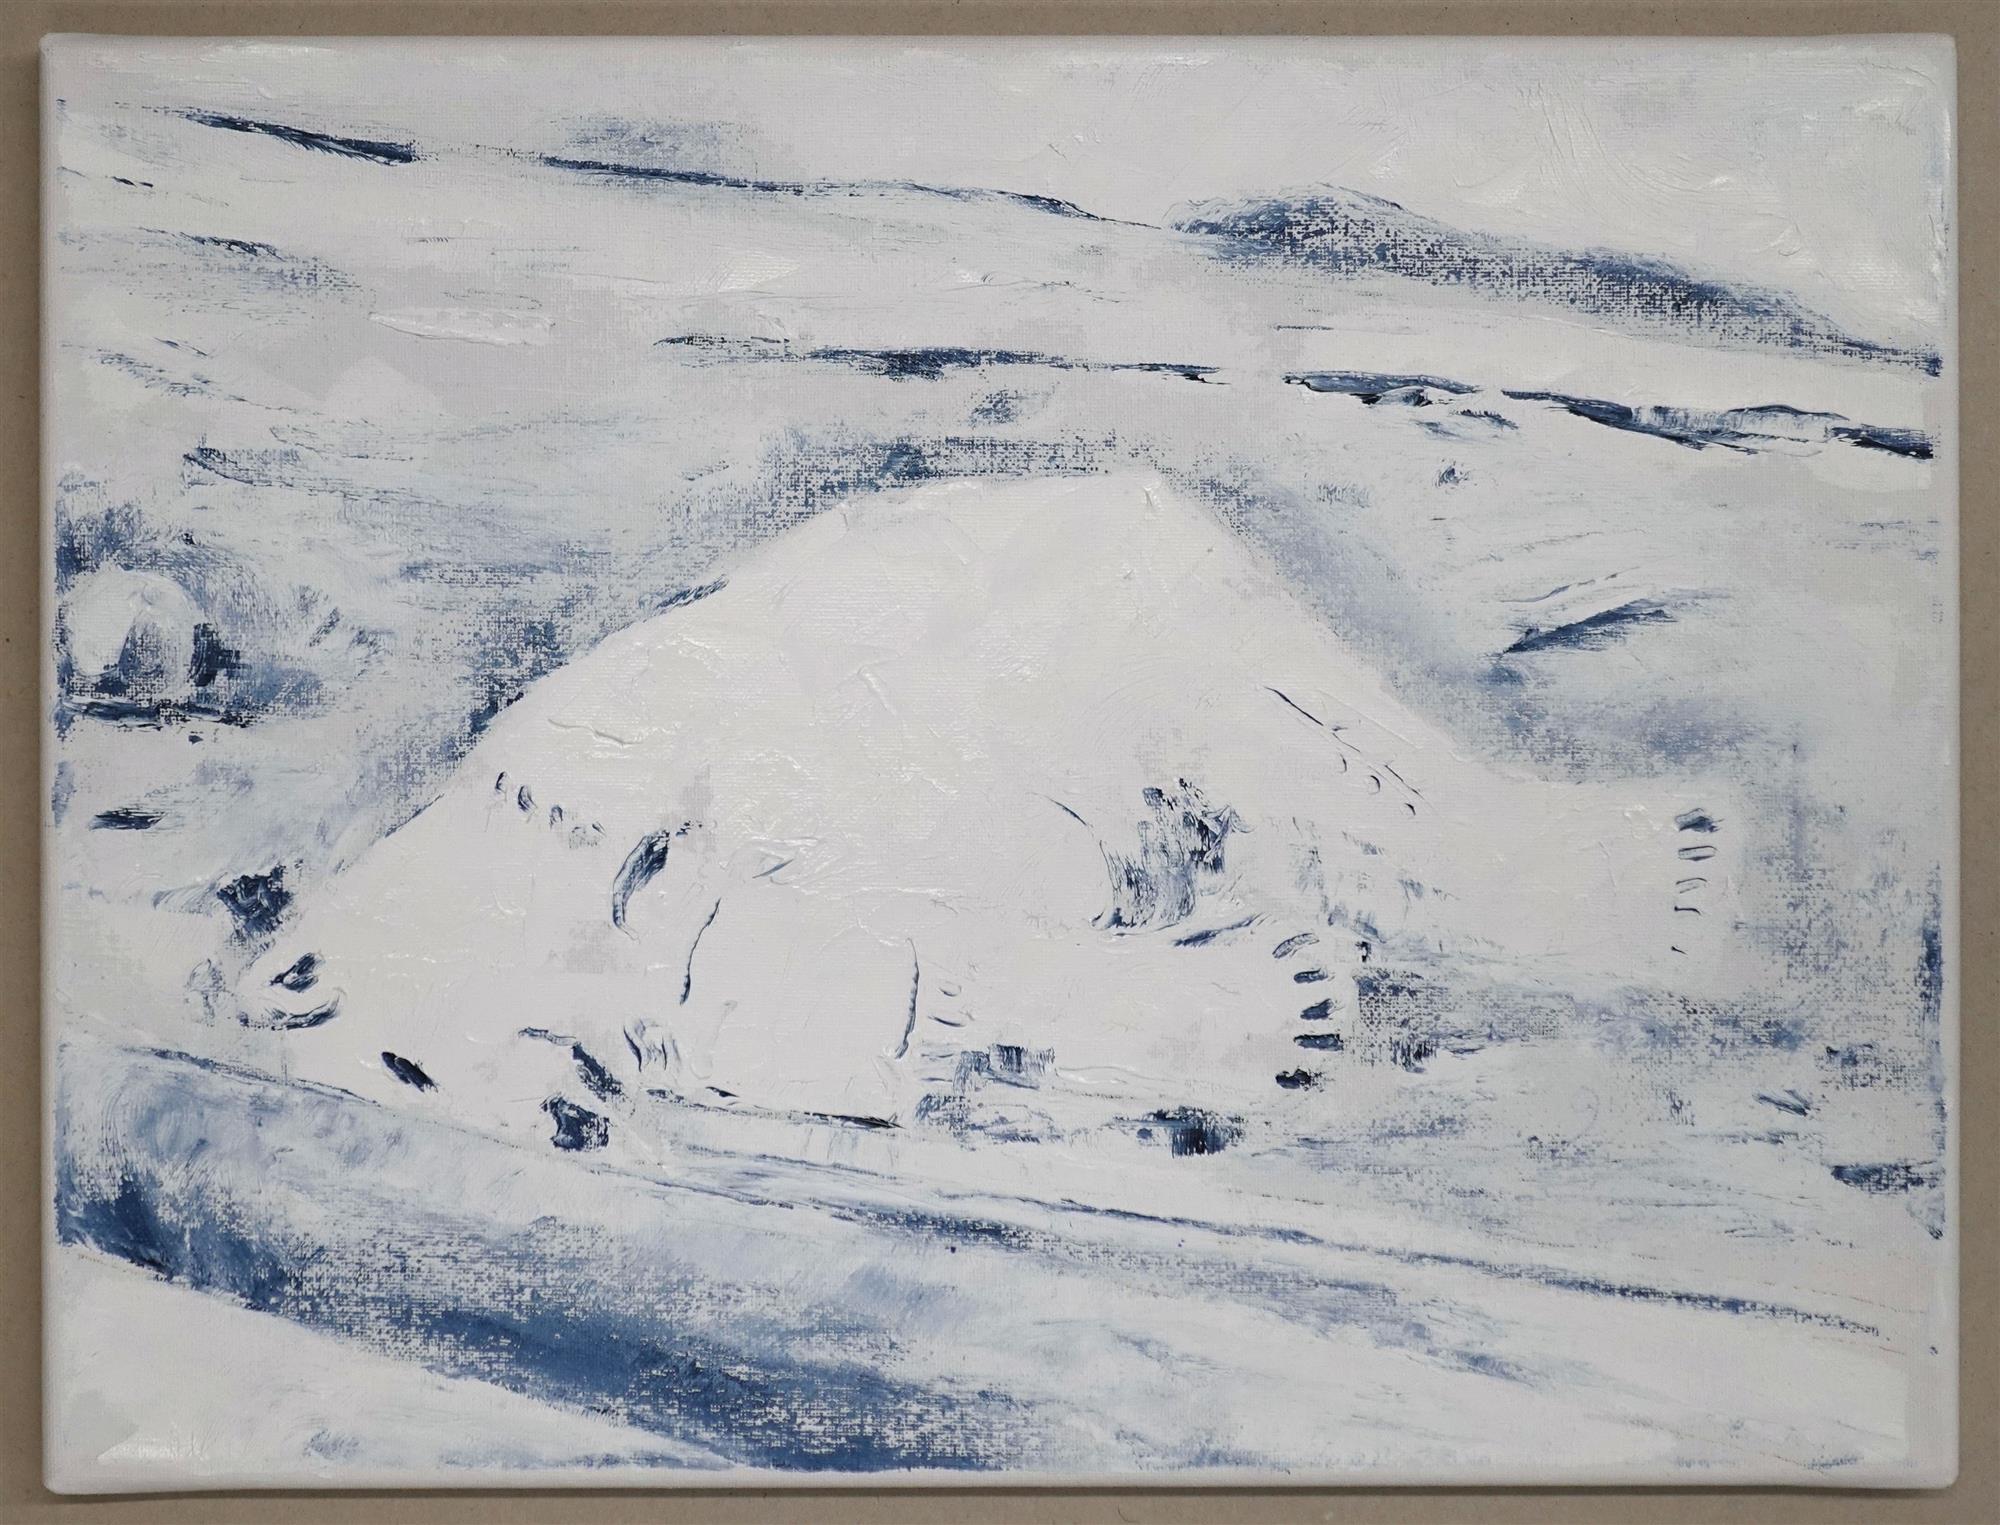 Eisbär, 2018, Öl auf Leinwand, 30 x 40 cm